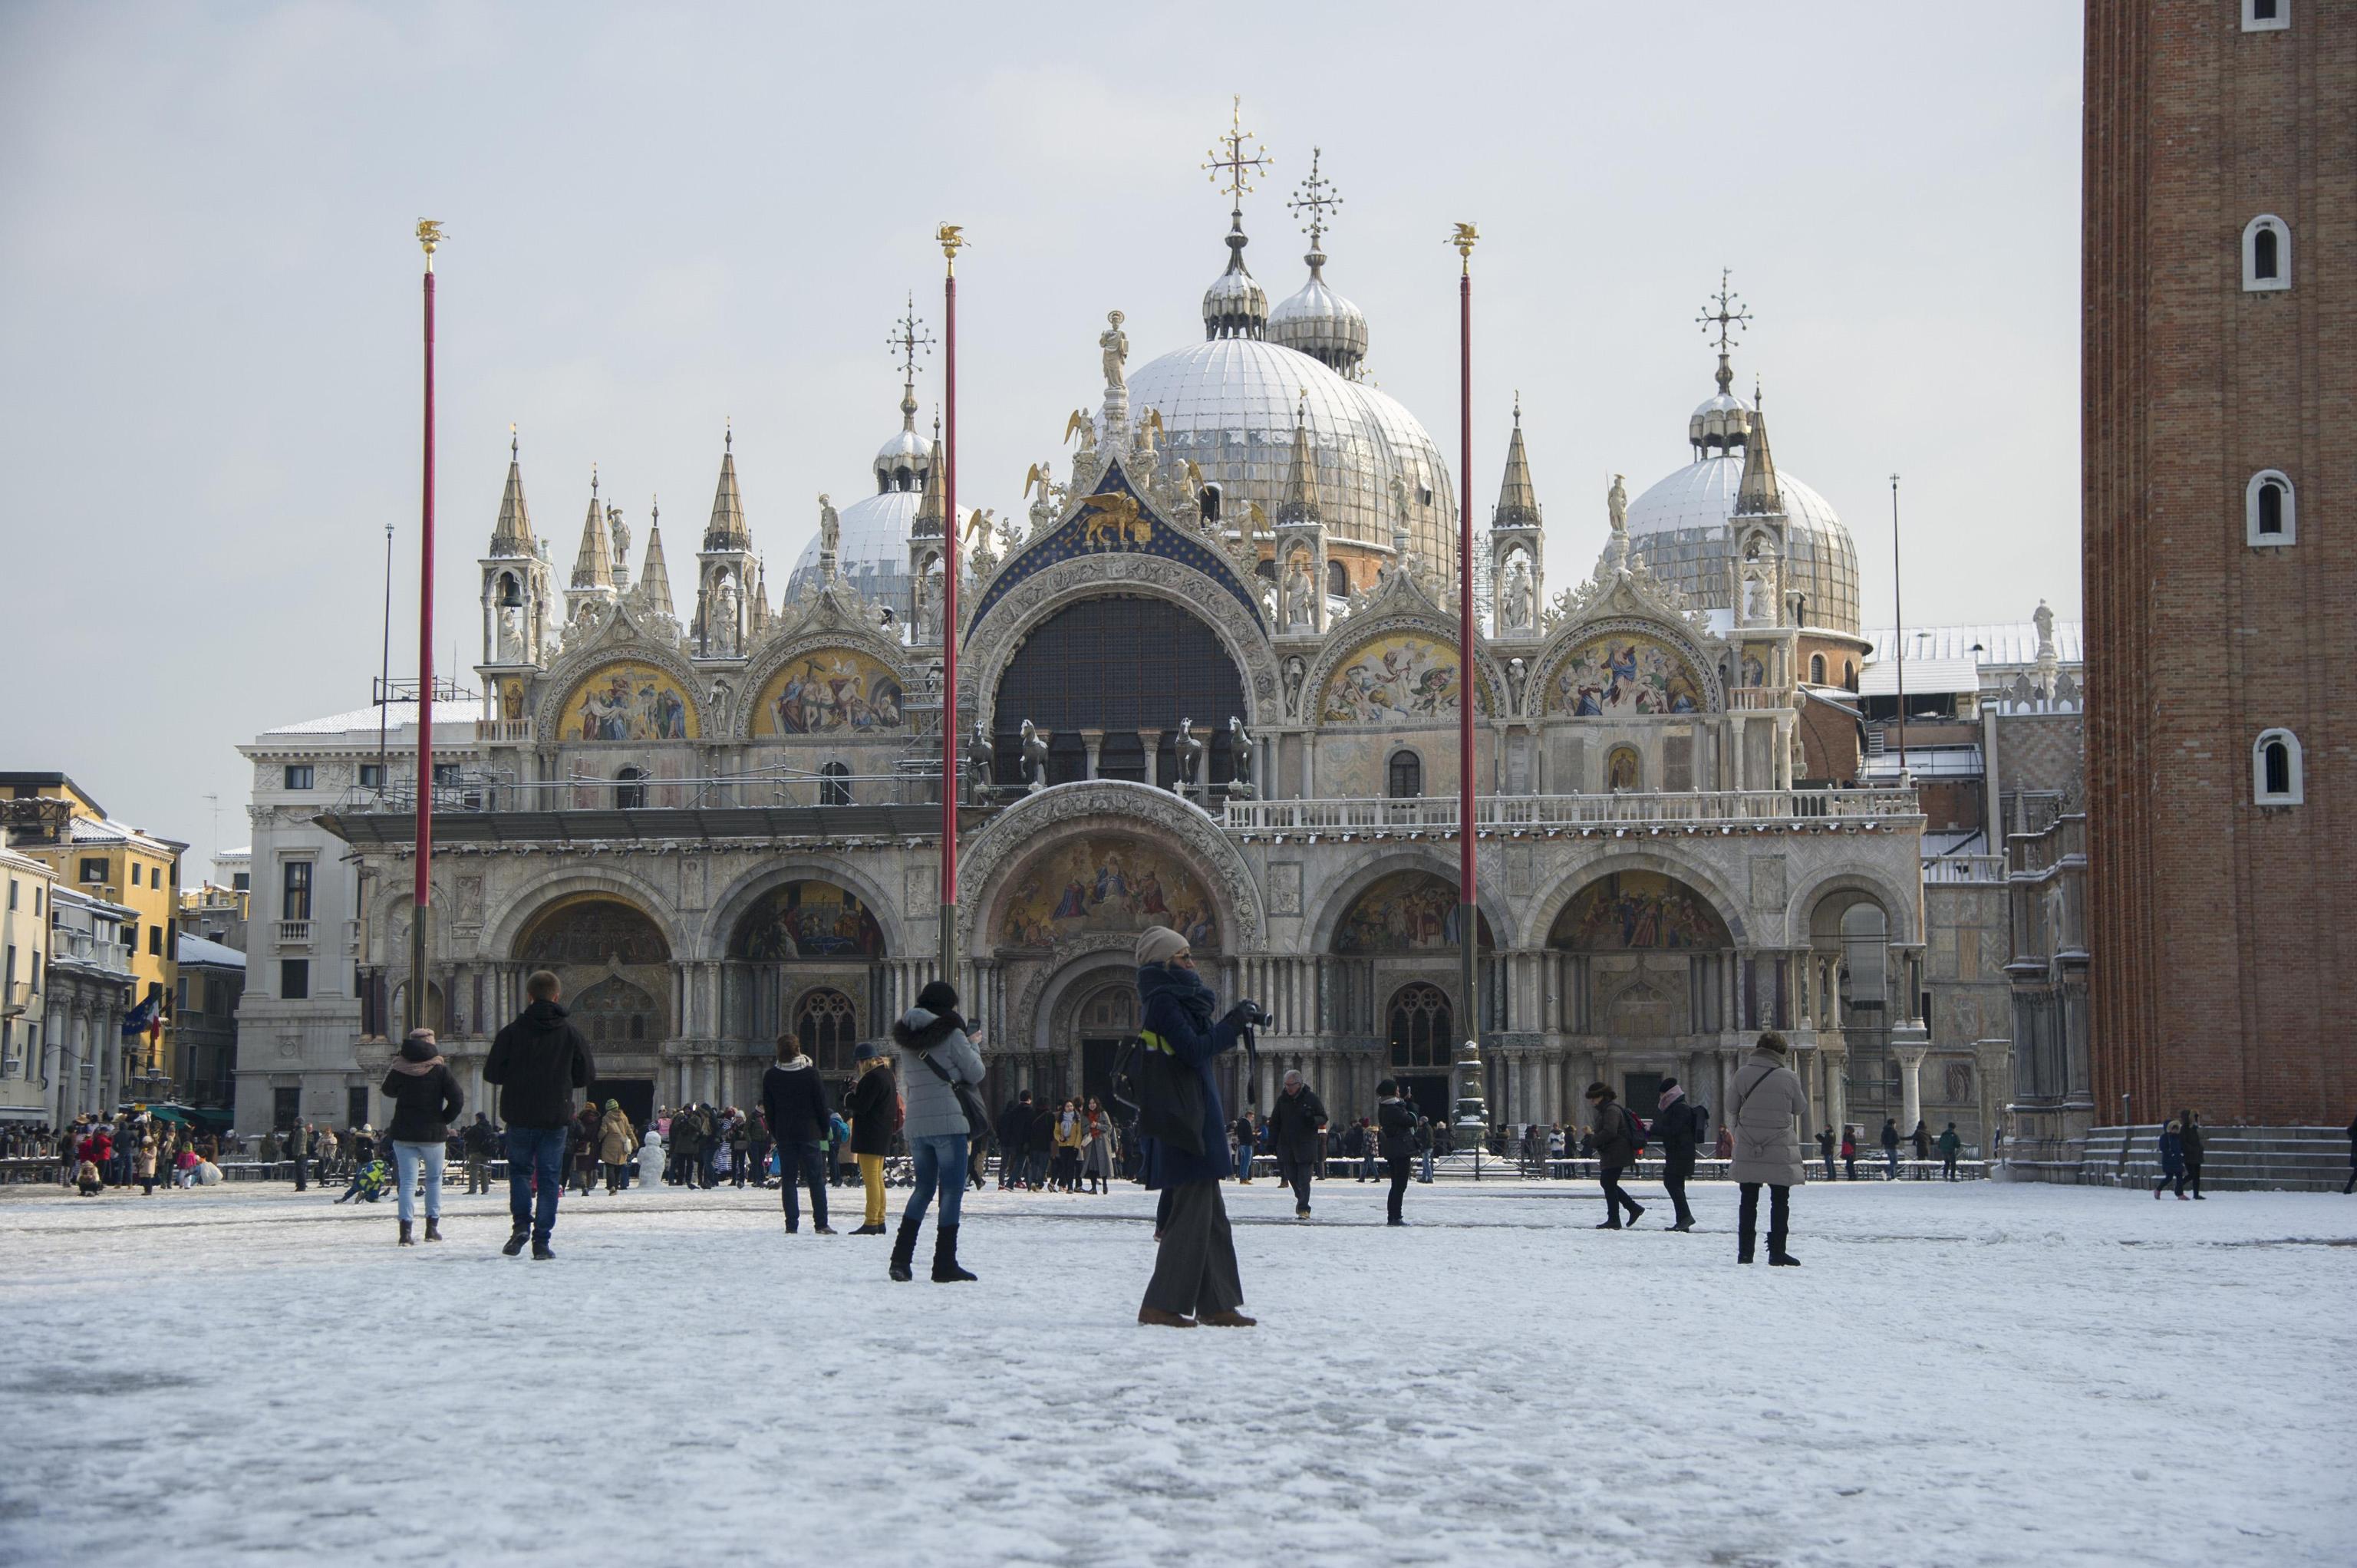 Anche Venezia si è svegliata ieri mattina sotto una leggera coltre di neve. Qui Piazza san Marco con la splendida cattedrale omonima